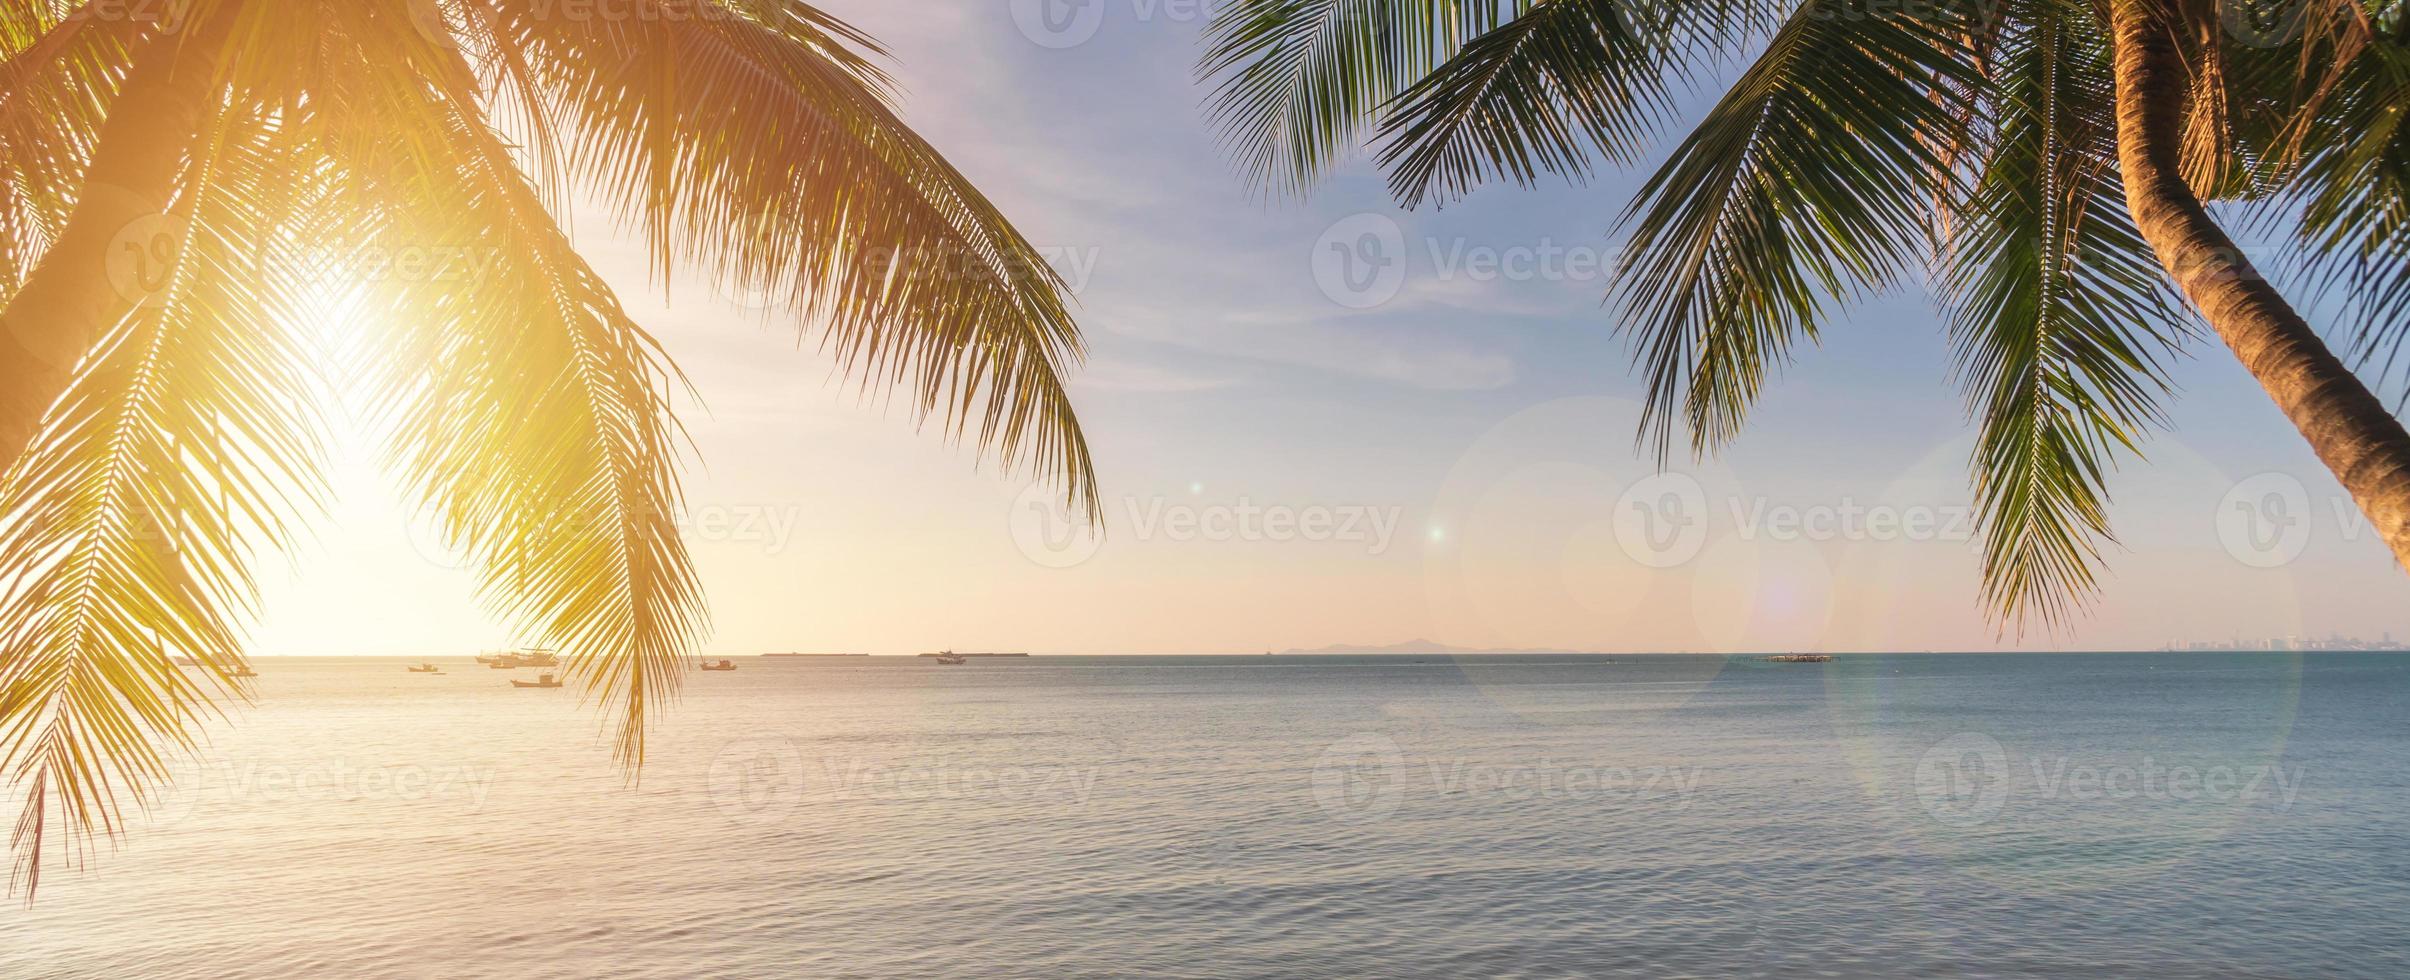 cocotier avec coucher de soleil sur la plage tropicale, concept de vacances d'été, panorama de la bannière photo